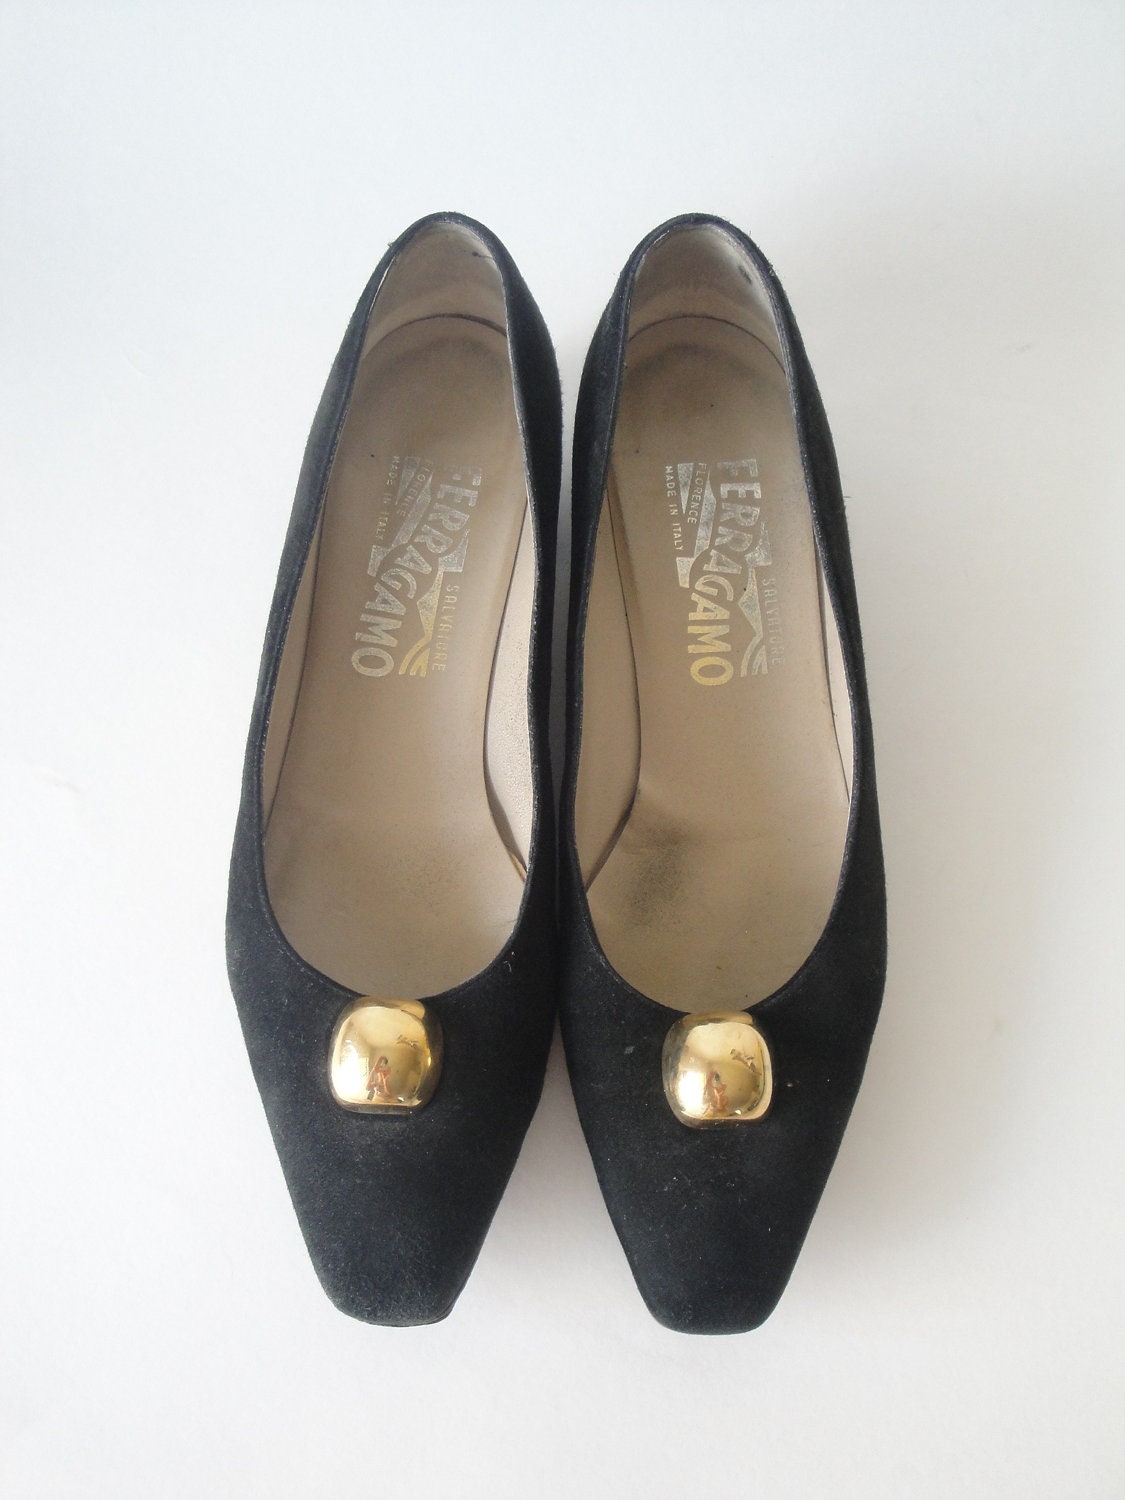 Vintage Salvatore Ferragamo Shoes / Black Suede Shoes / size